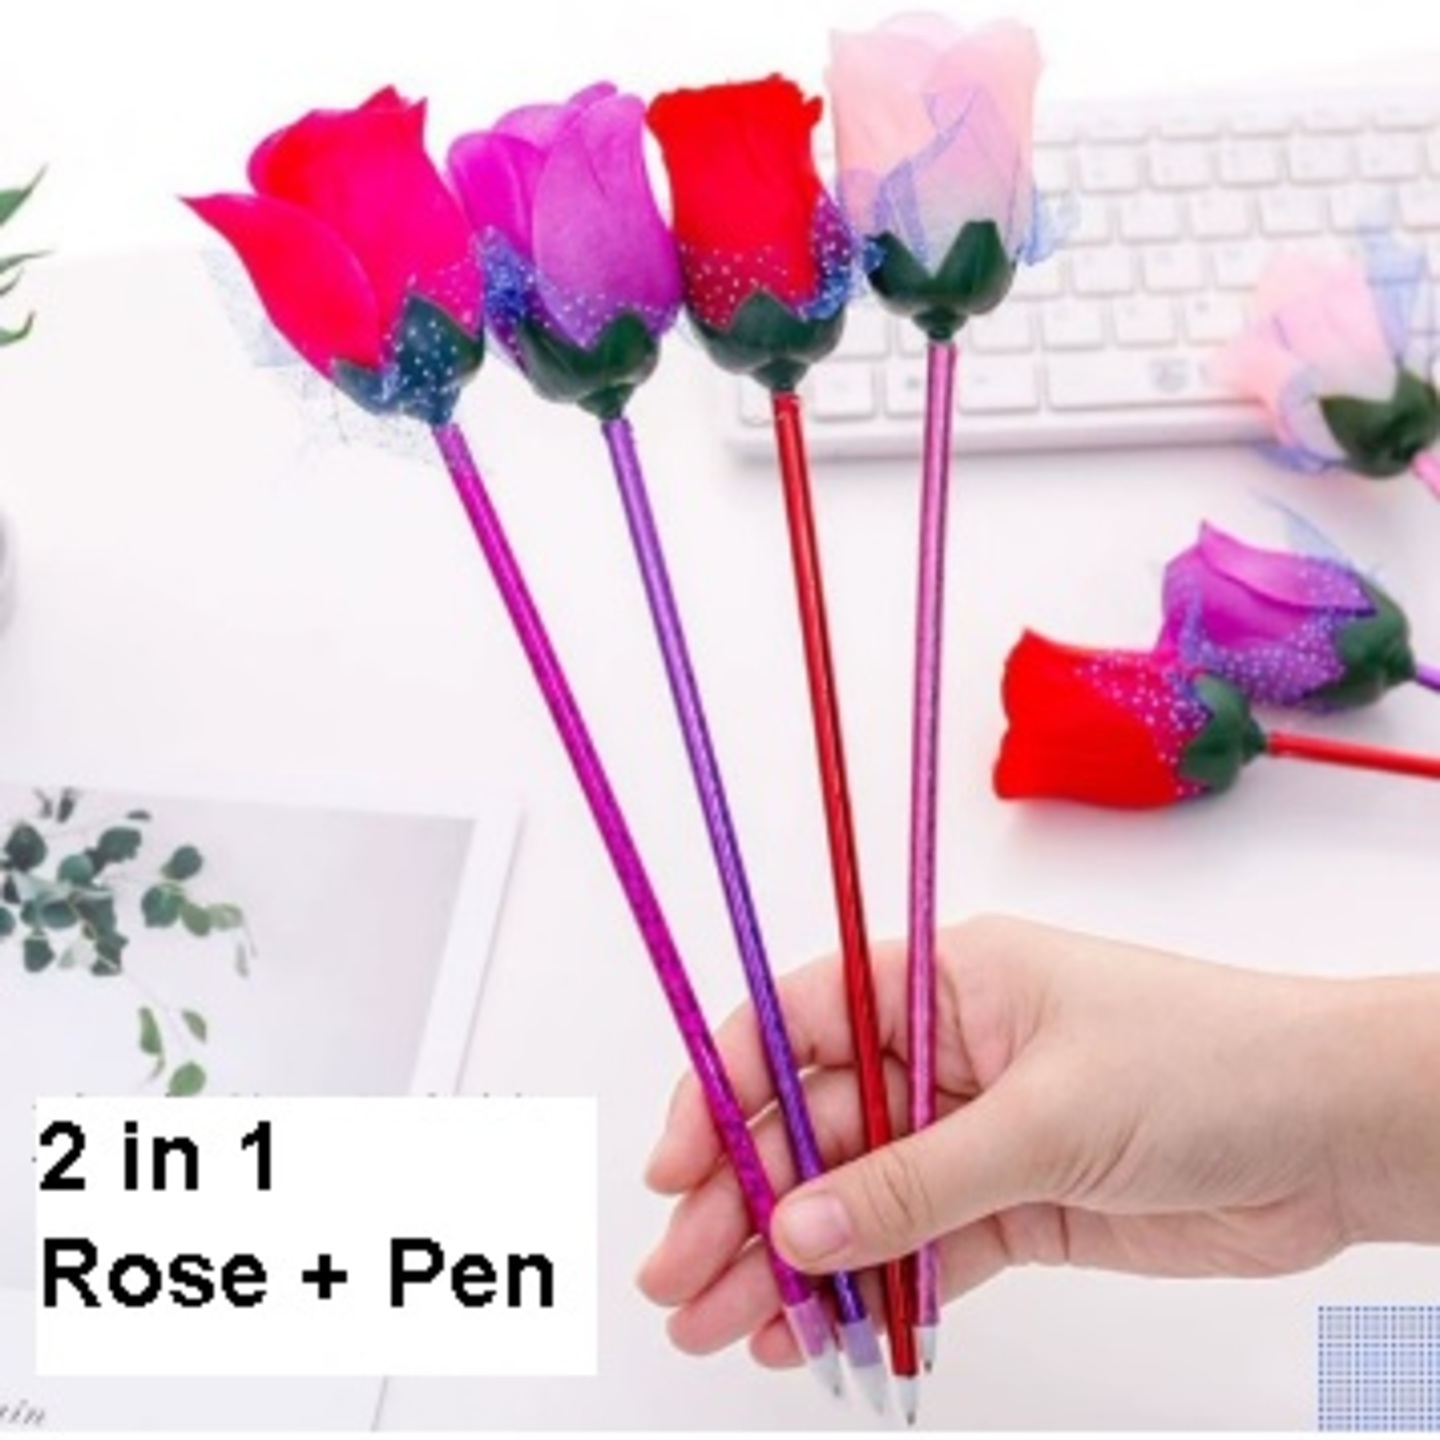 Forever Rose 2 in 1 Rose + Pen